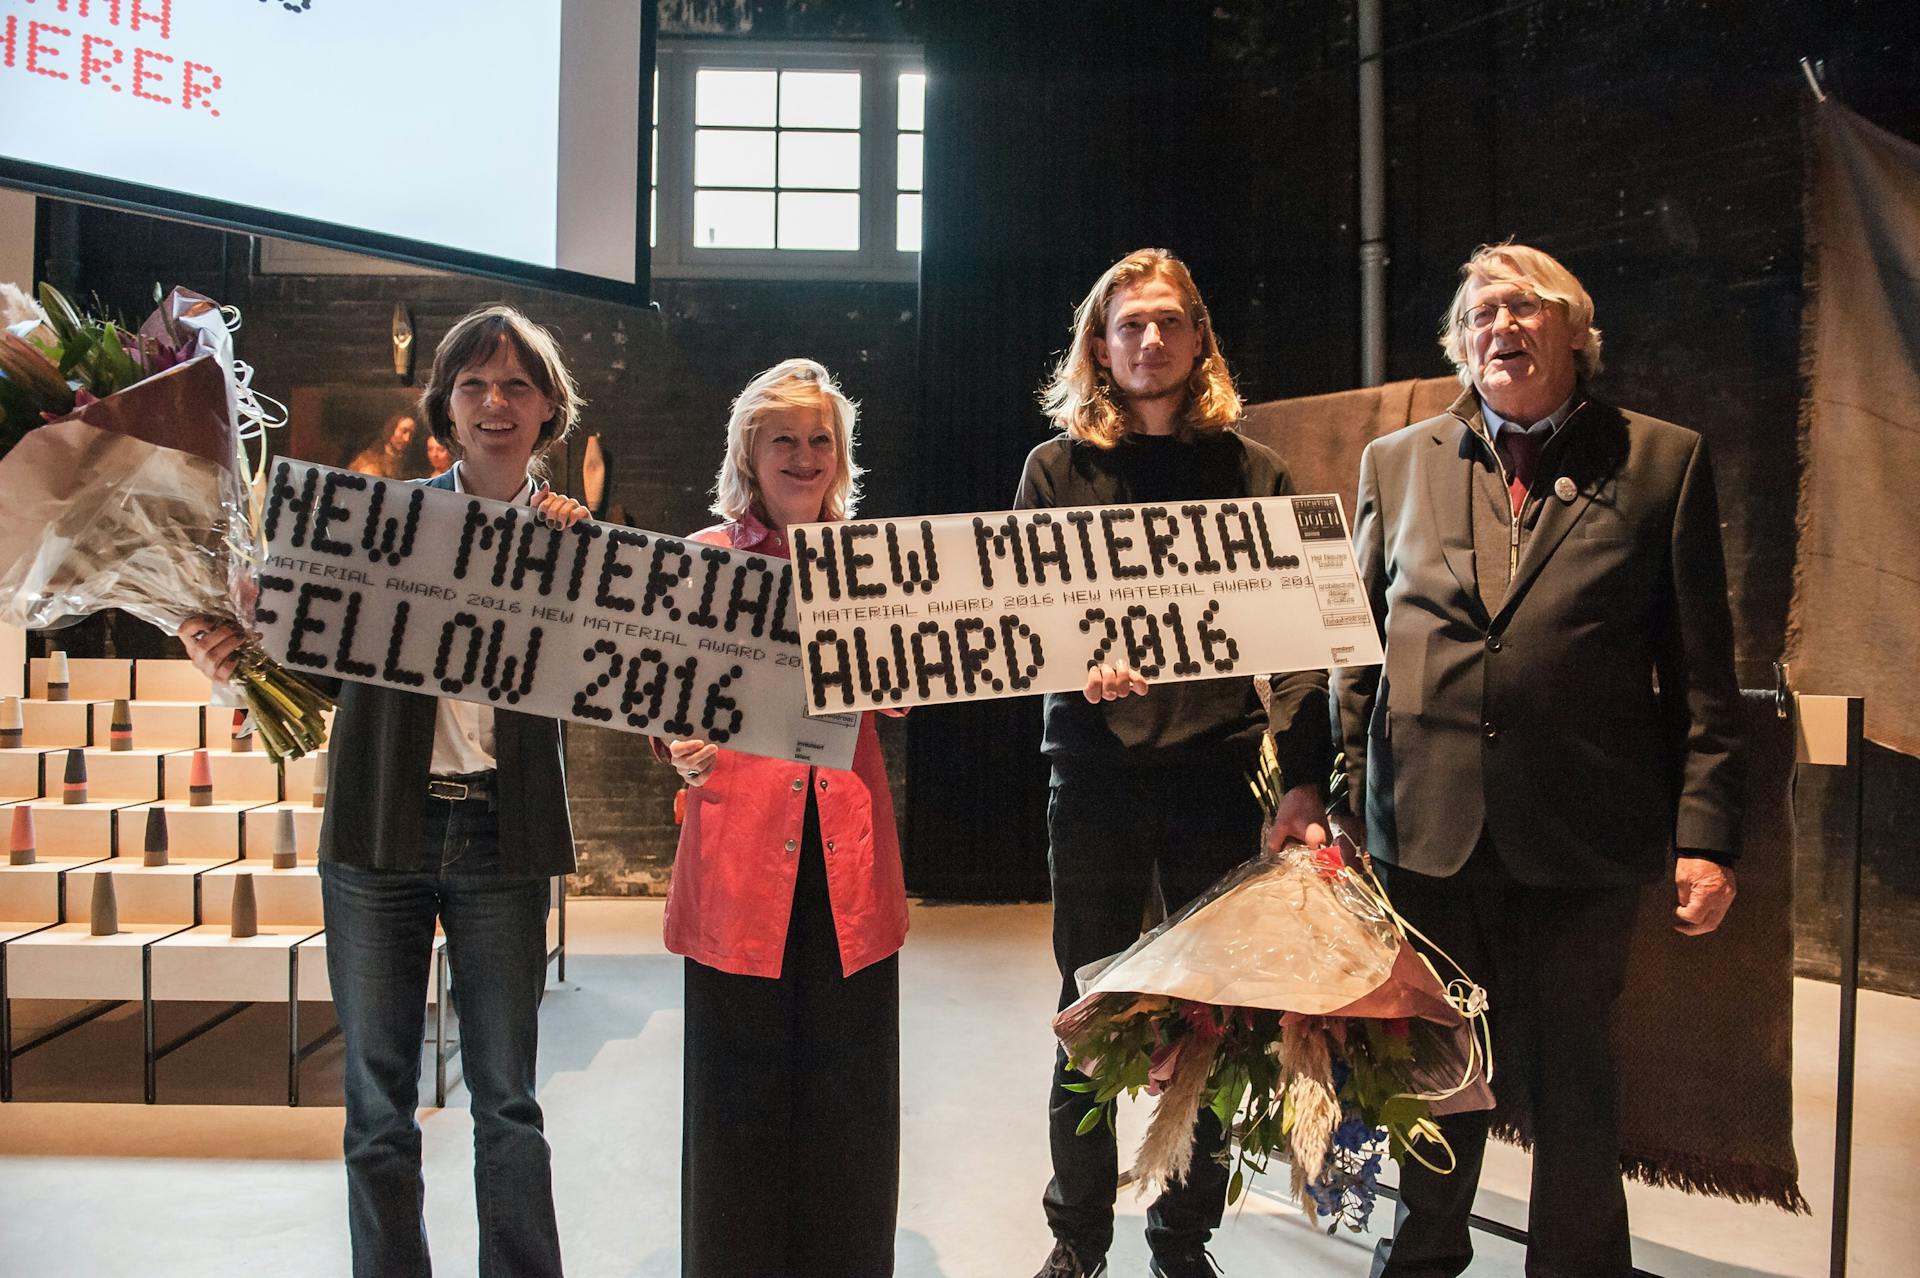  New Material Fellow Diana Scherer, Minister Bussemaker, New Material Award 2016 Olivier van Herpt juryvoorzitter Pieter Keune. Foto: William van der Voort 